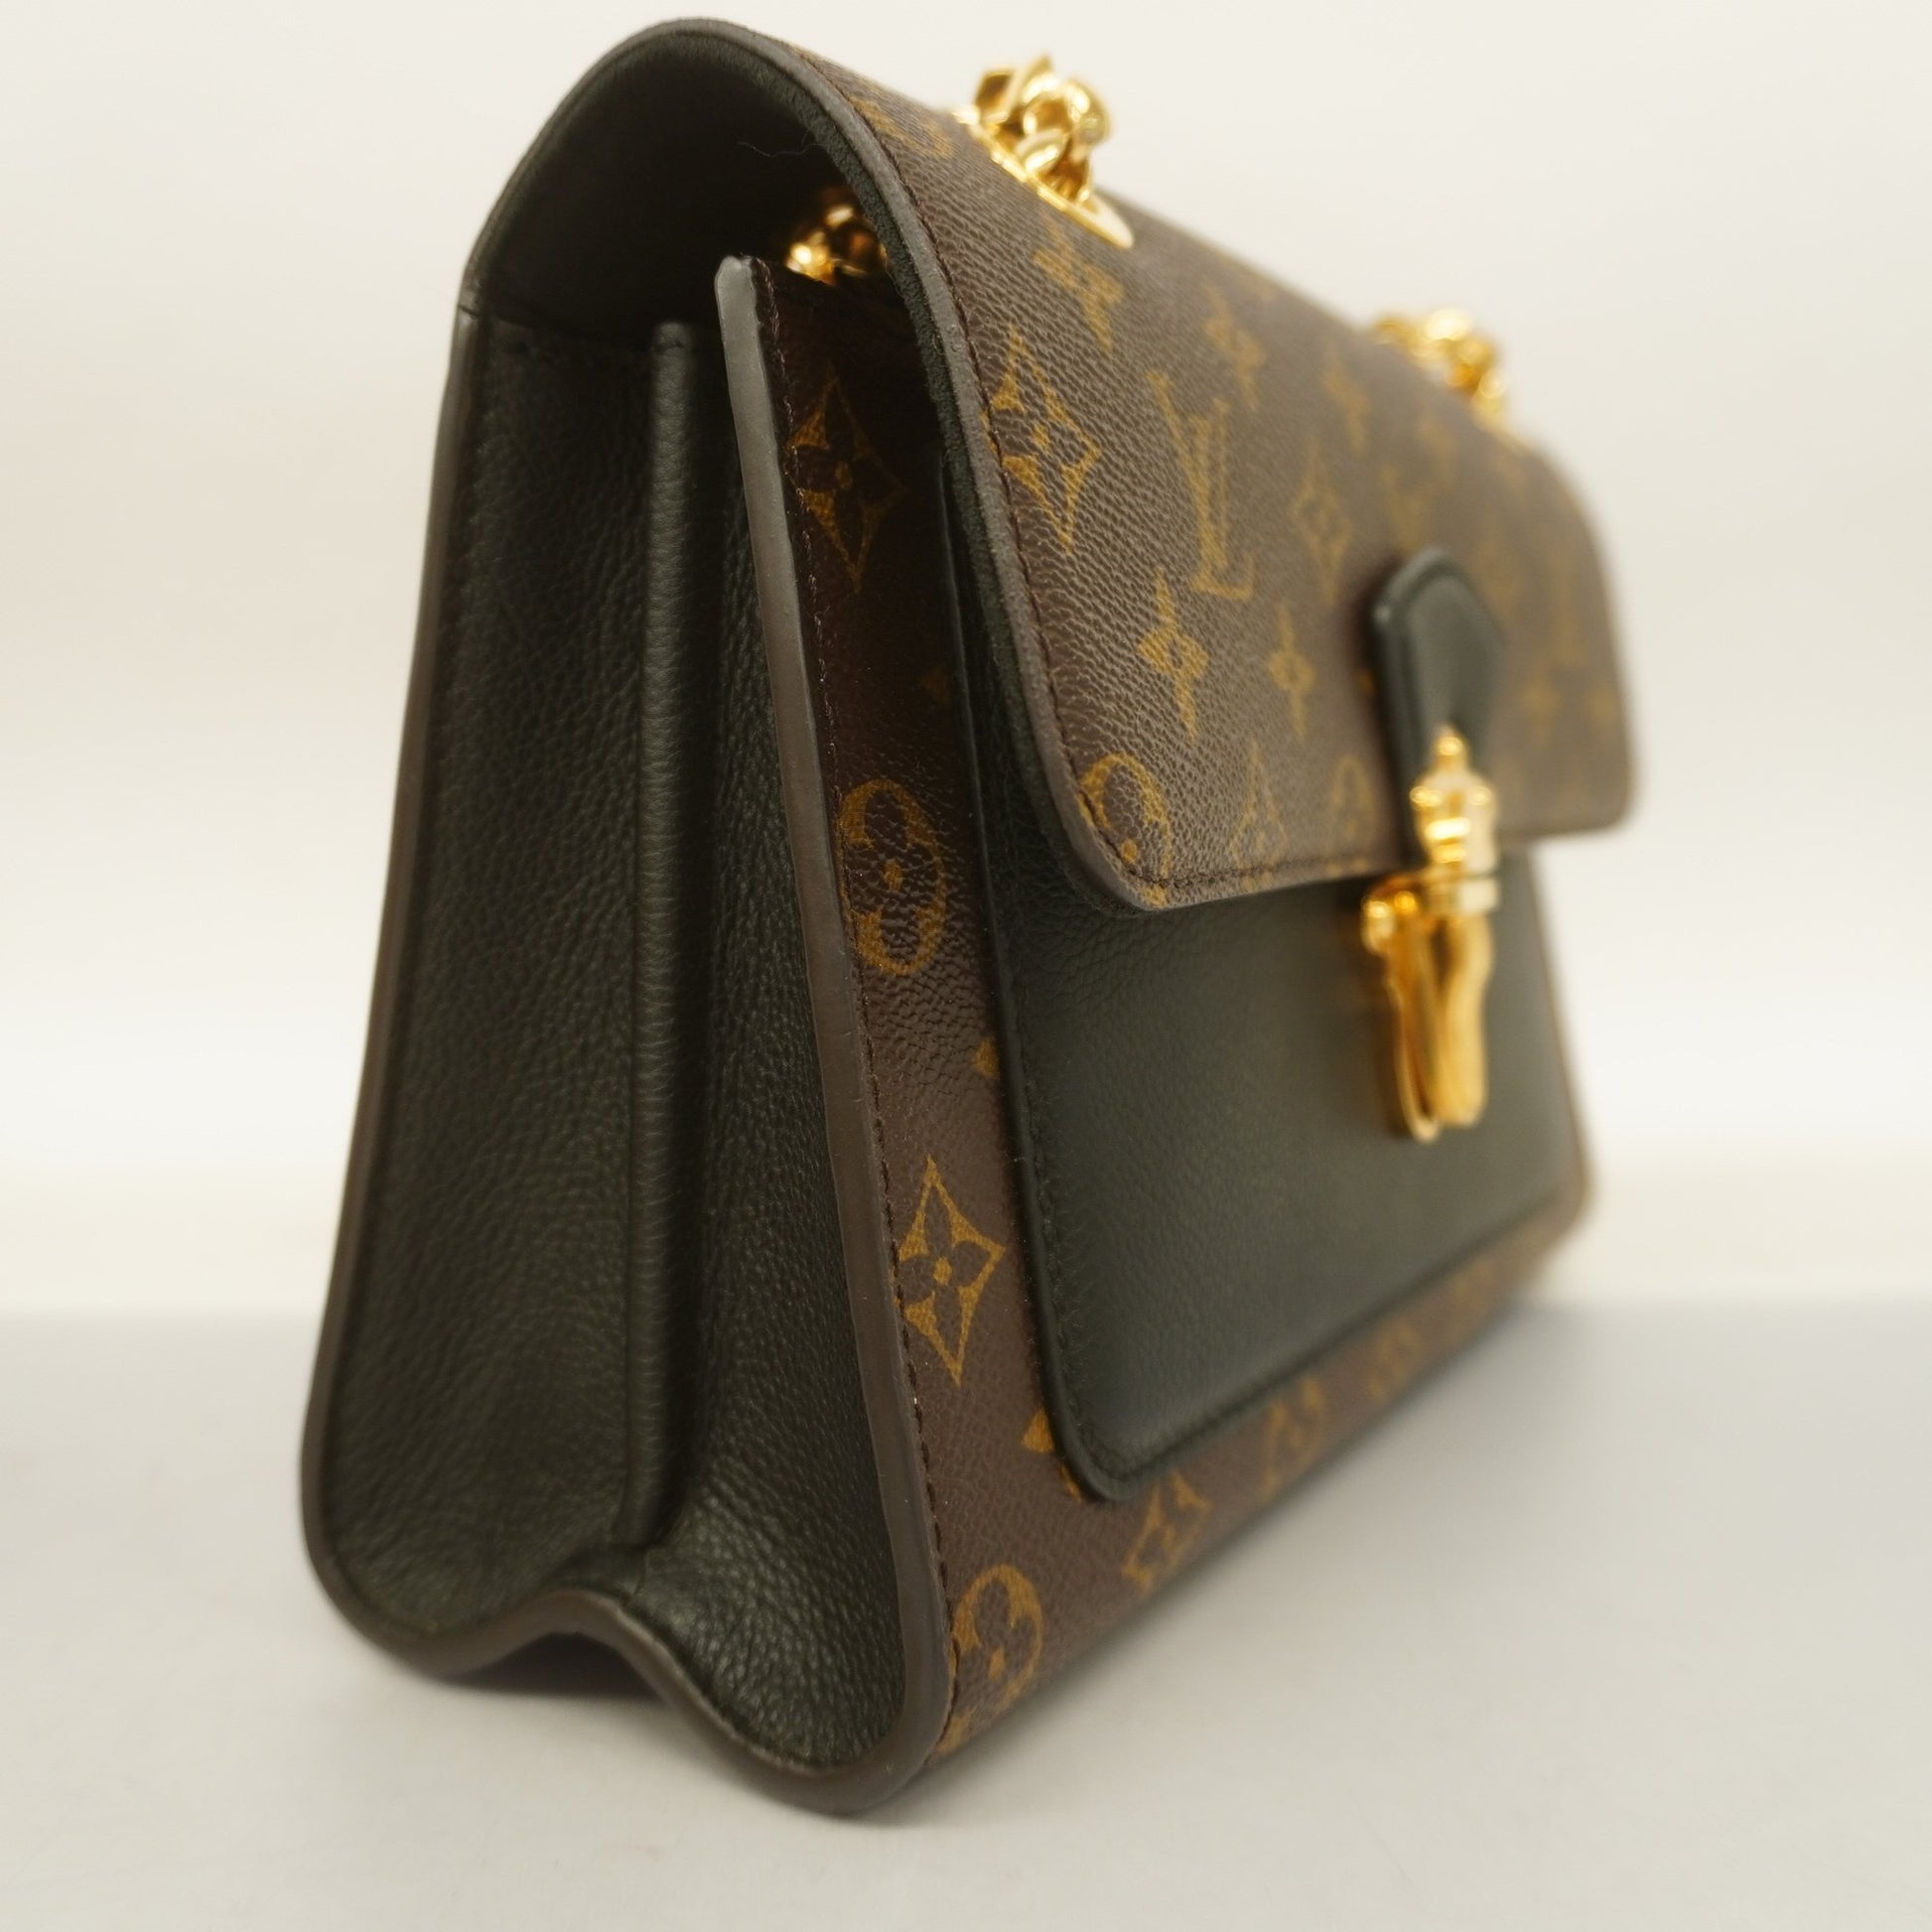 LOUIS VUITTON Victoire Monogram Black Leather Hand Bag M41730 - NEW